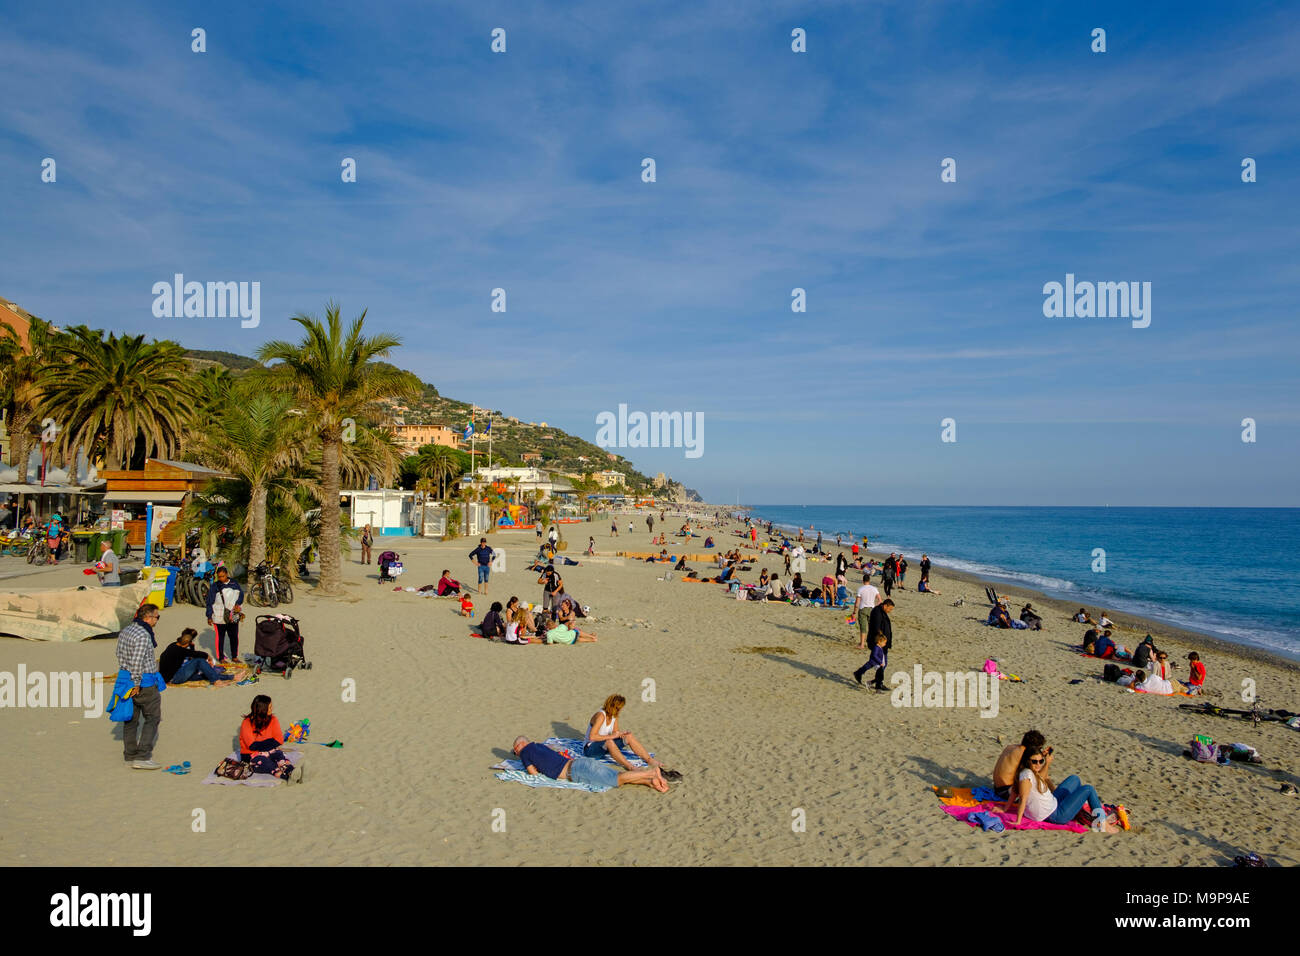 Les gens sur la plage, Finalmarina, Finale Ligure, Riviera di Ponente, Ligurie, Italie Banque D'Images